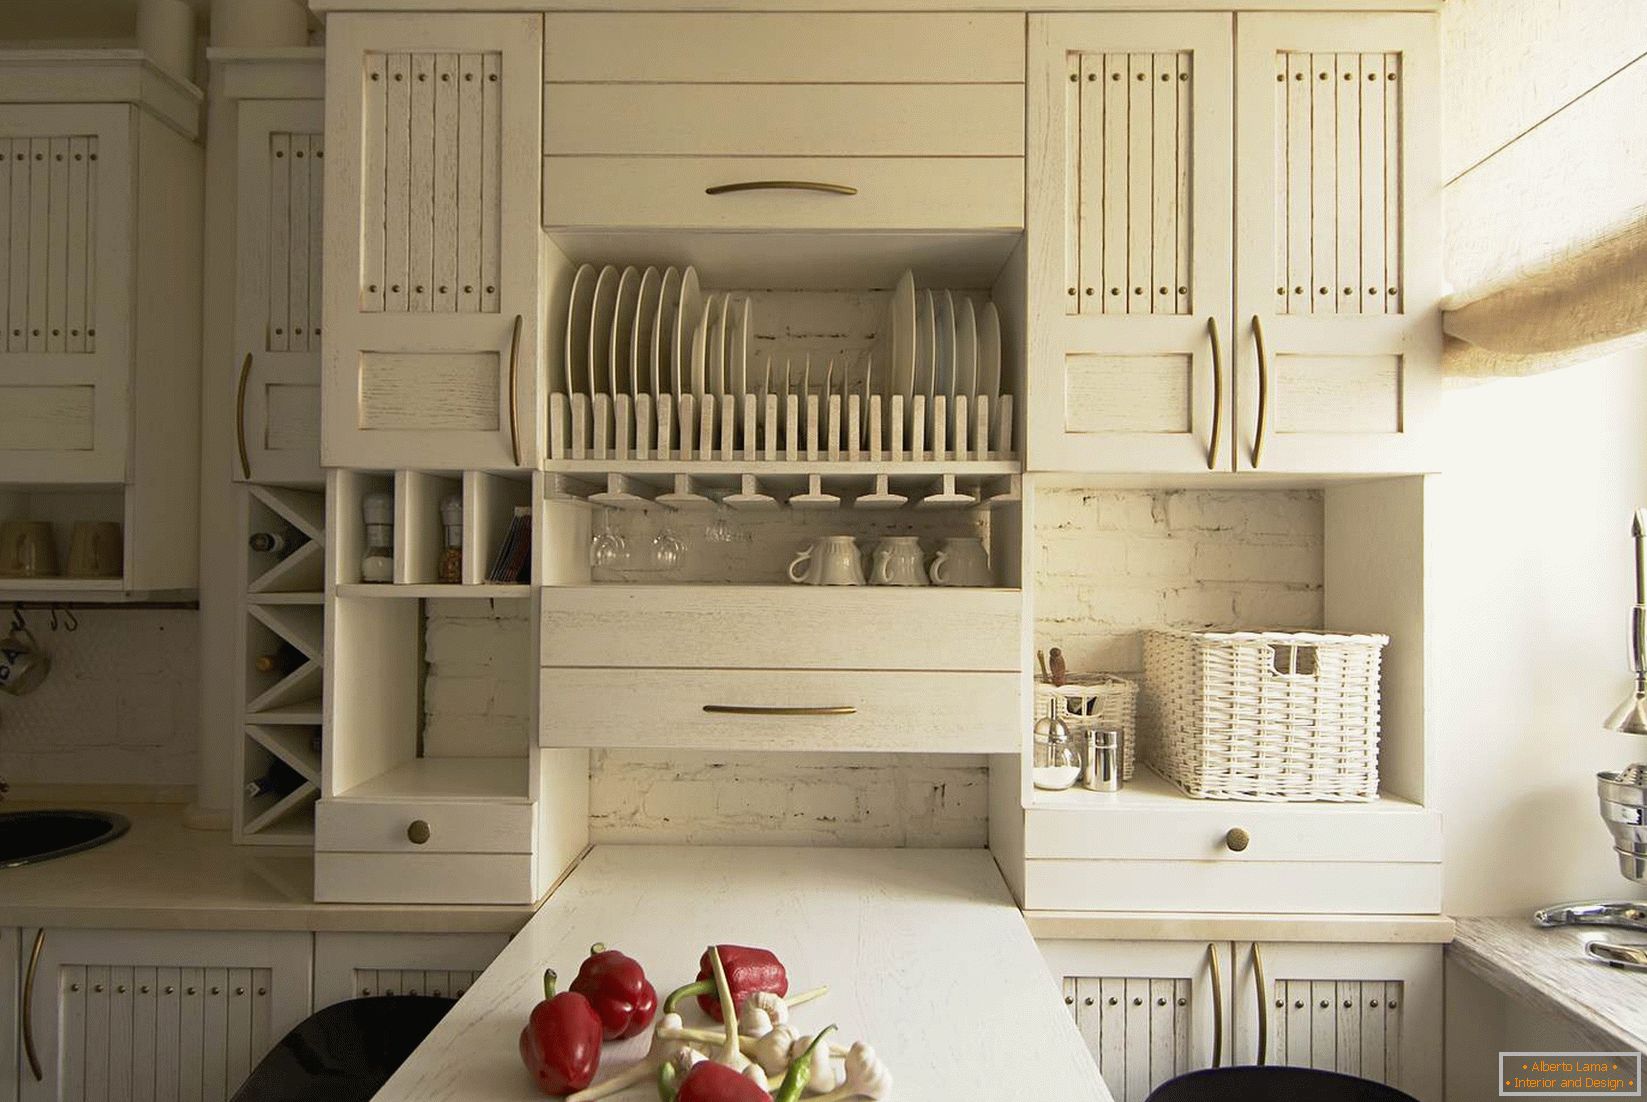 Móveis brancos em uma pequena cozinha